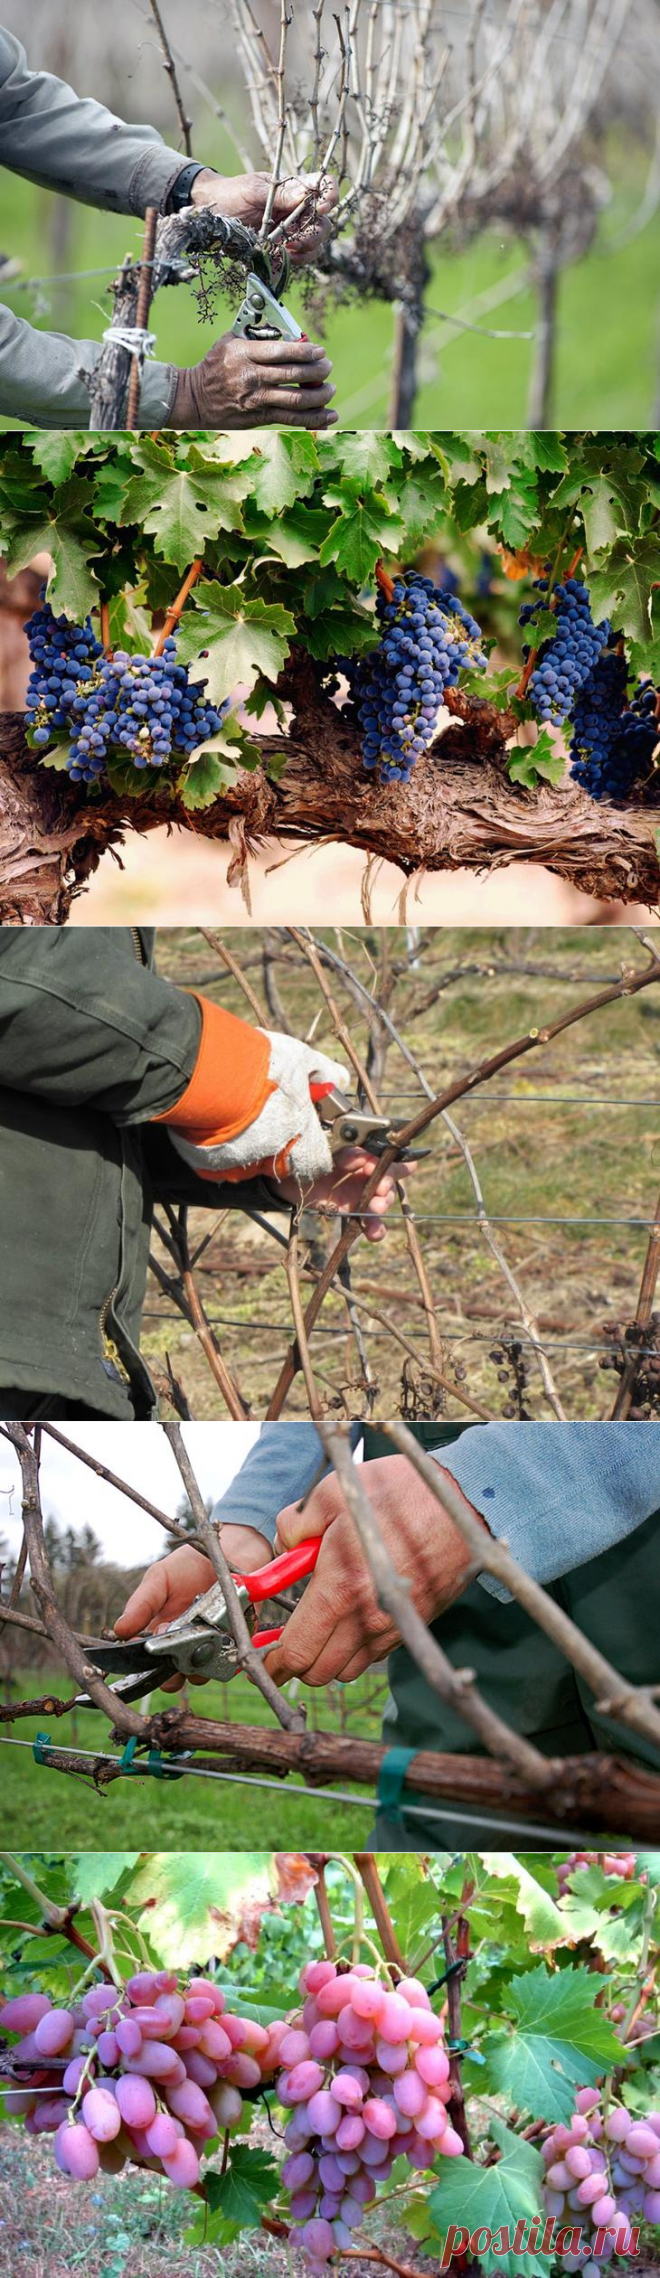 Обрезка винограда — самый правильный путь к увеличению плодоношения